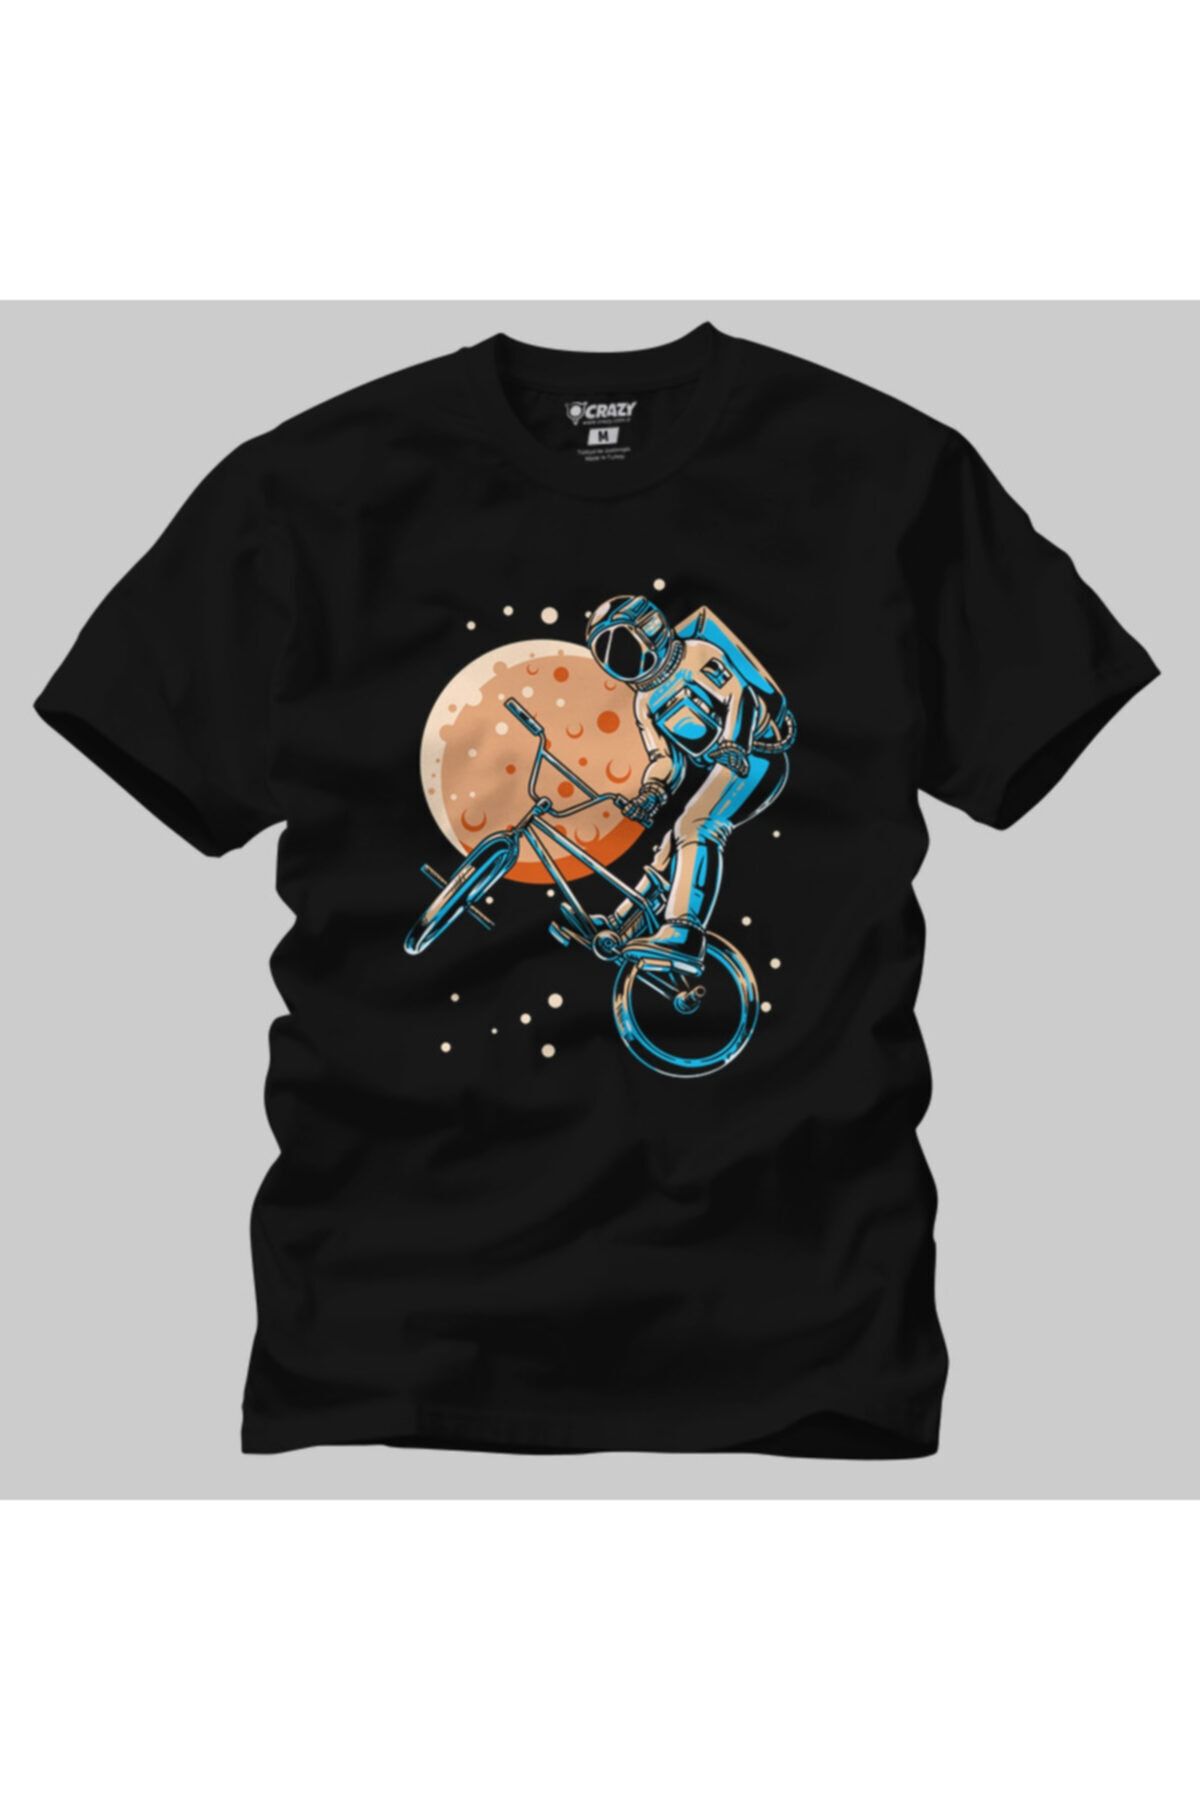 Crazy Astronaut Bmx Moon Space Biker Erkek Tişört